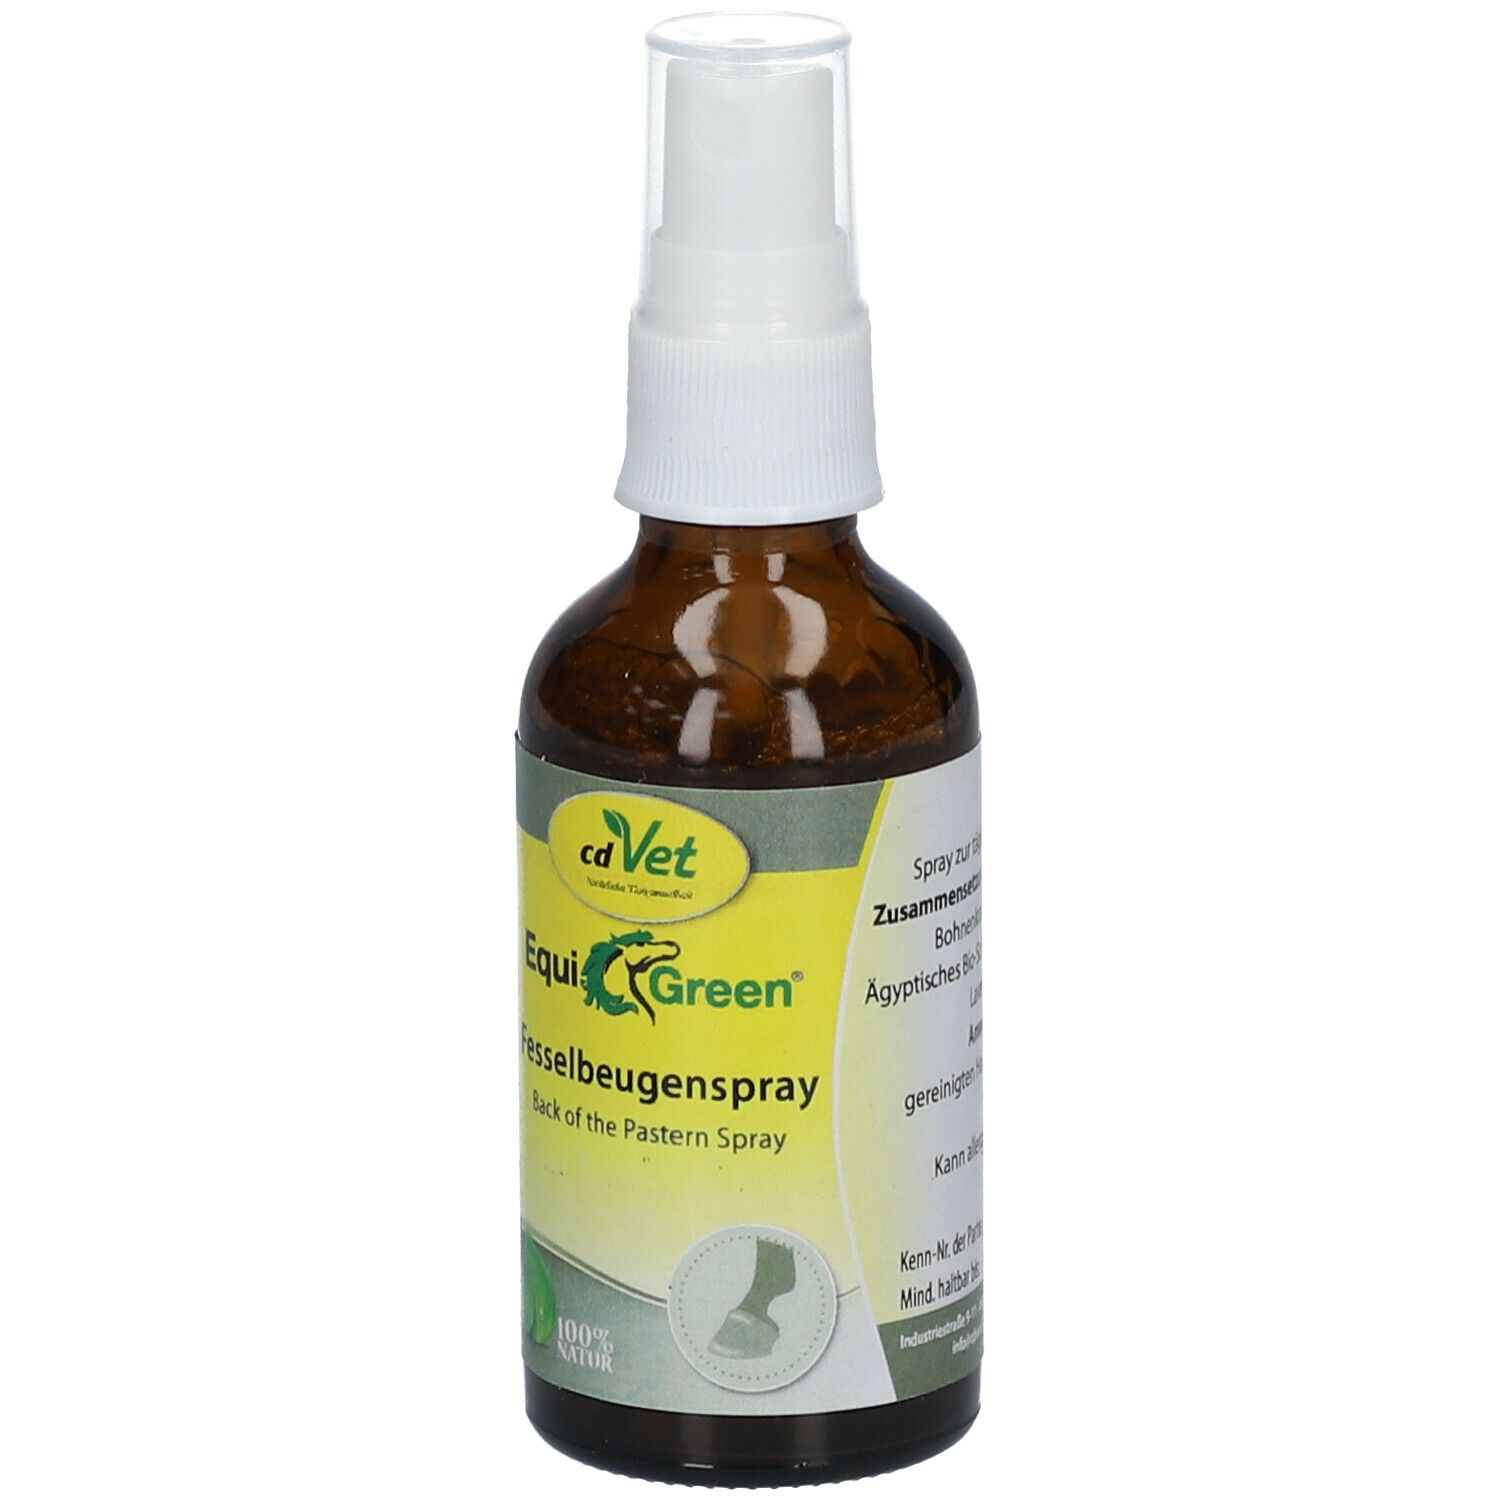 cdVet EquiGreen® Fesselbeugenspray